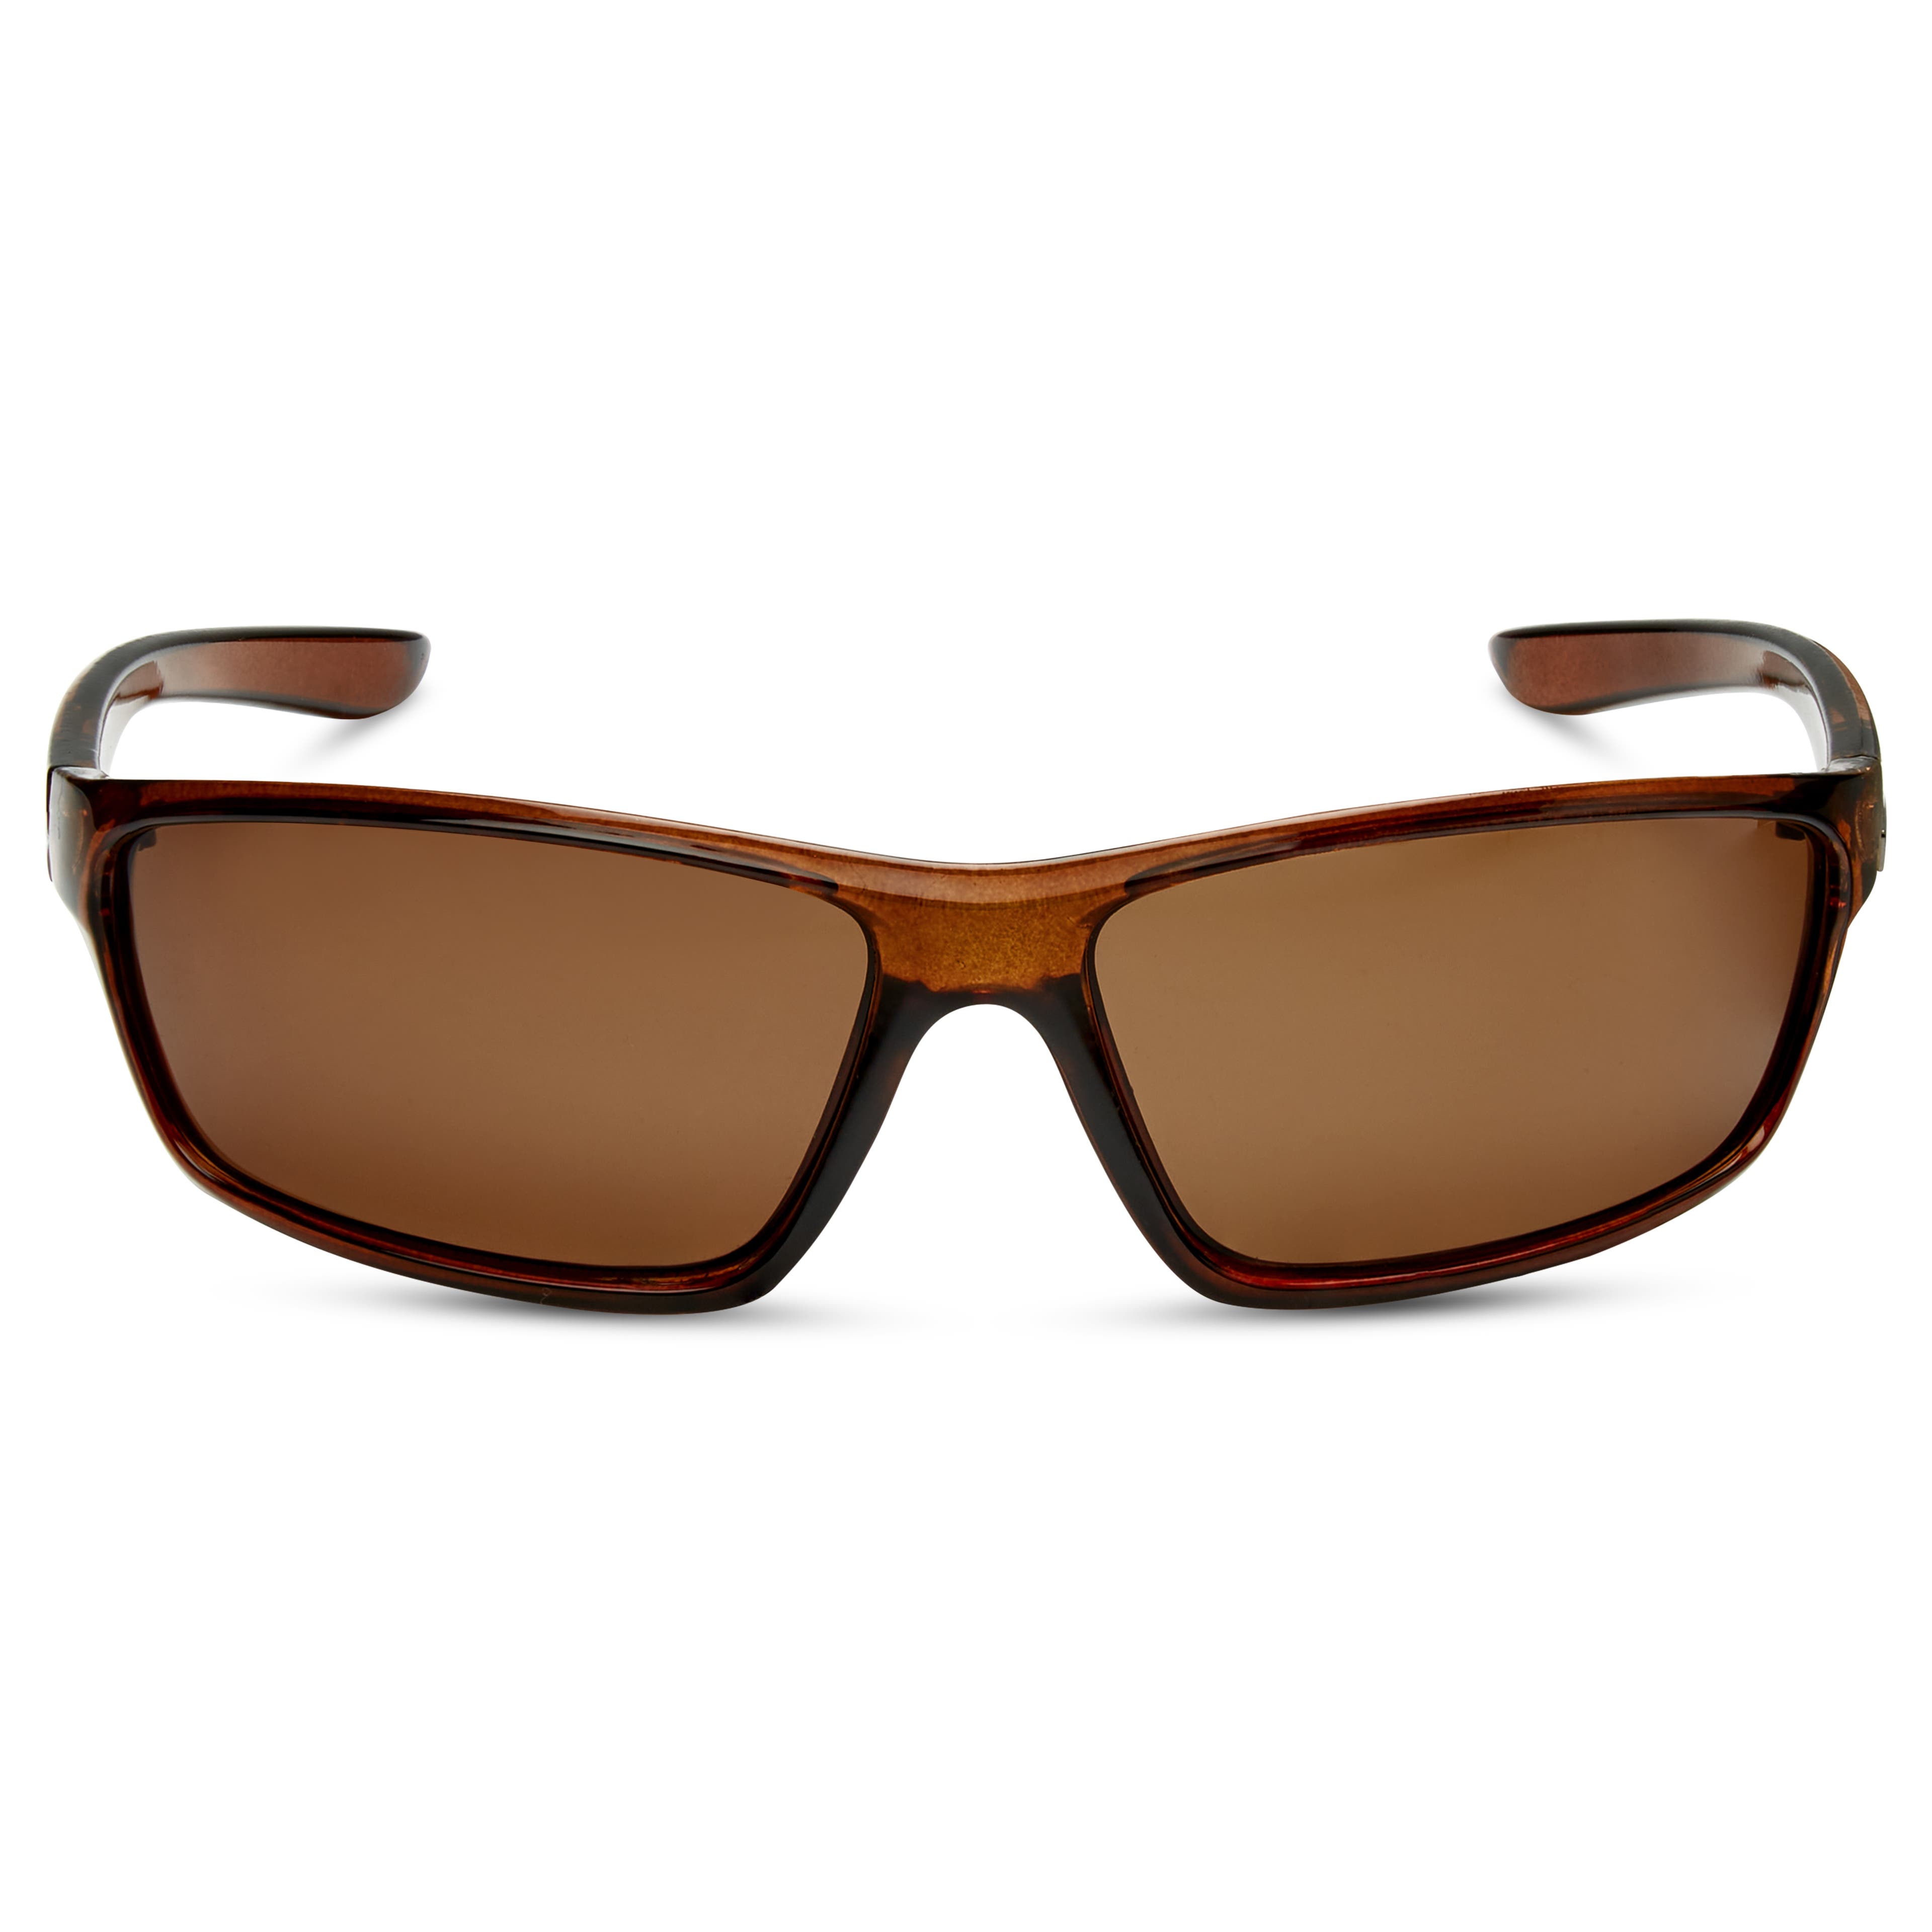 Eleganti occhiali da sole marroni con lenti polarizzate